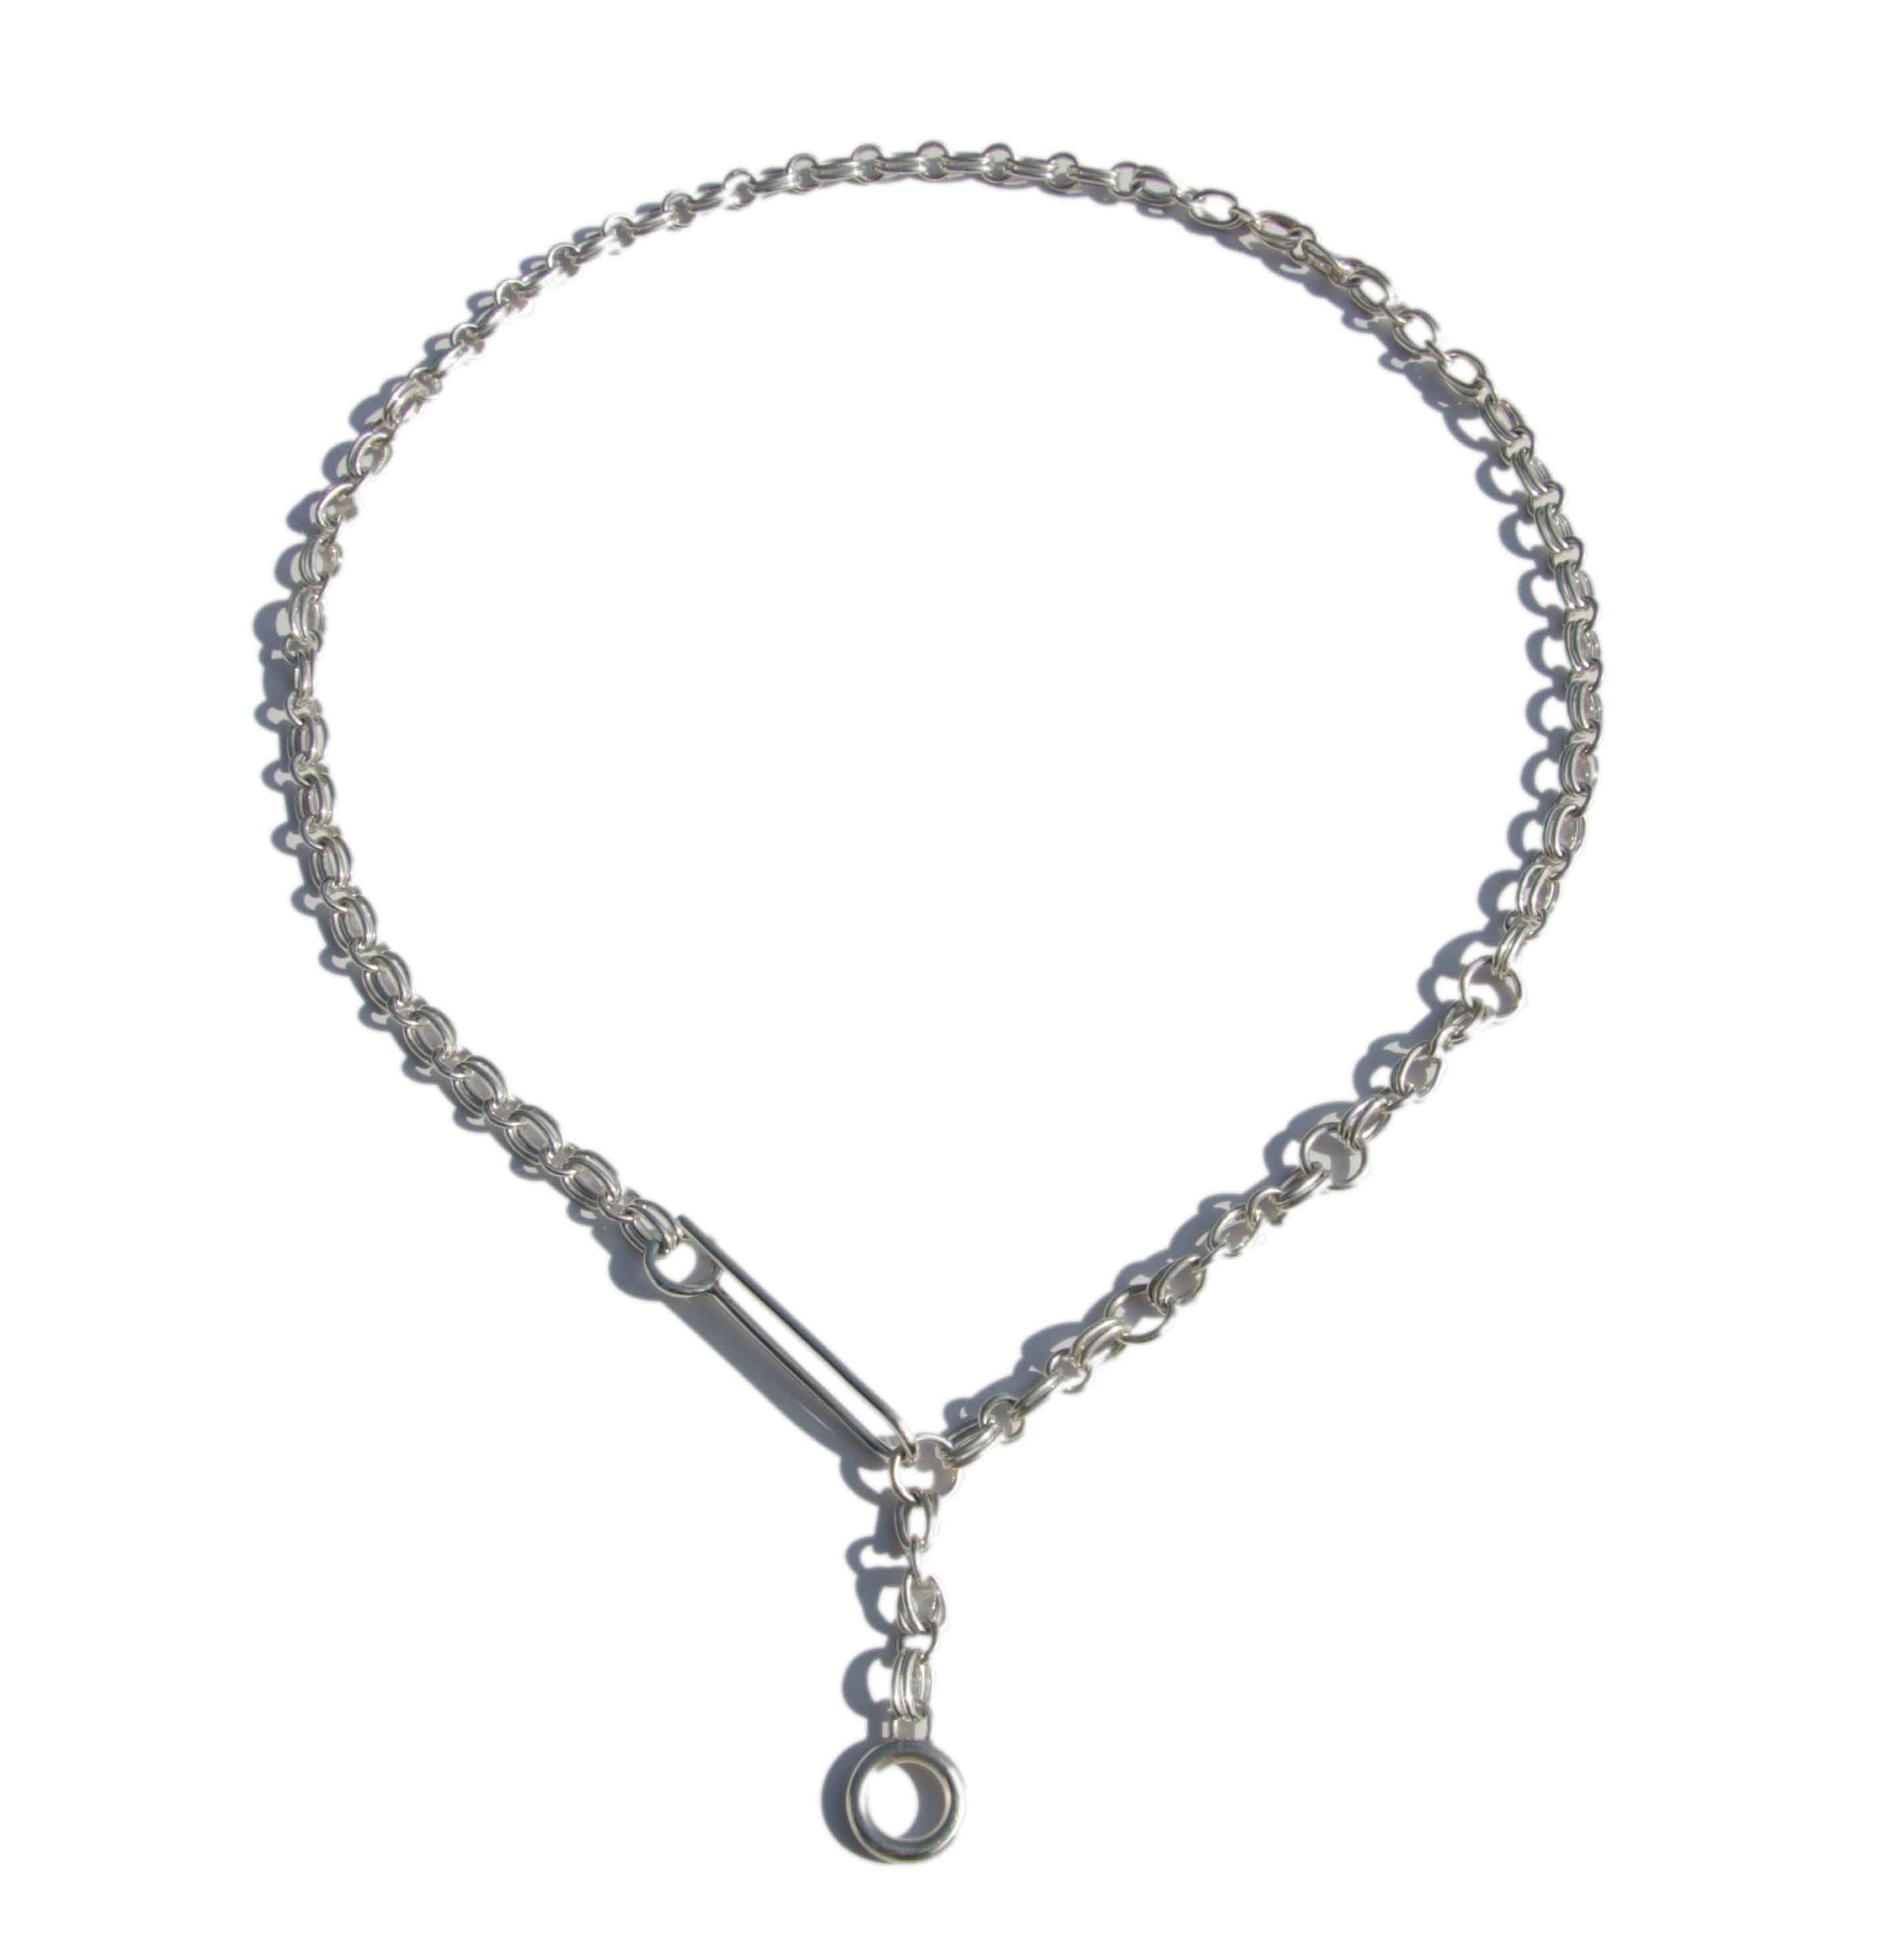 Handmade silver chain